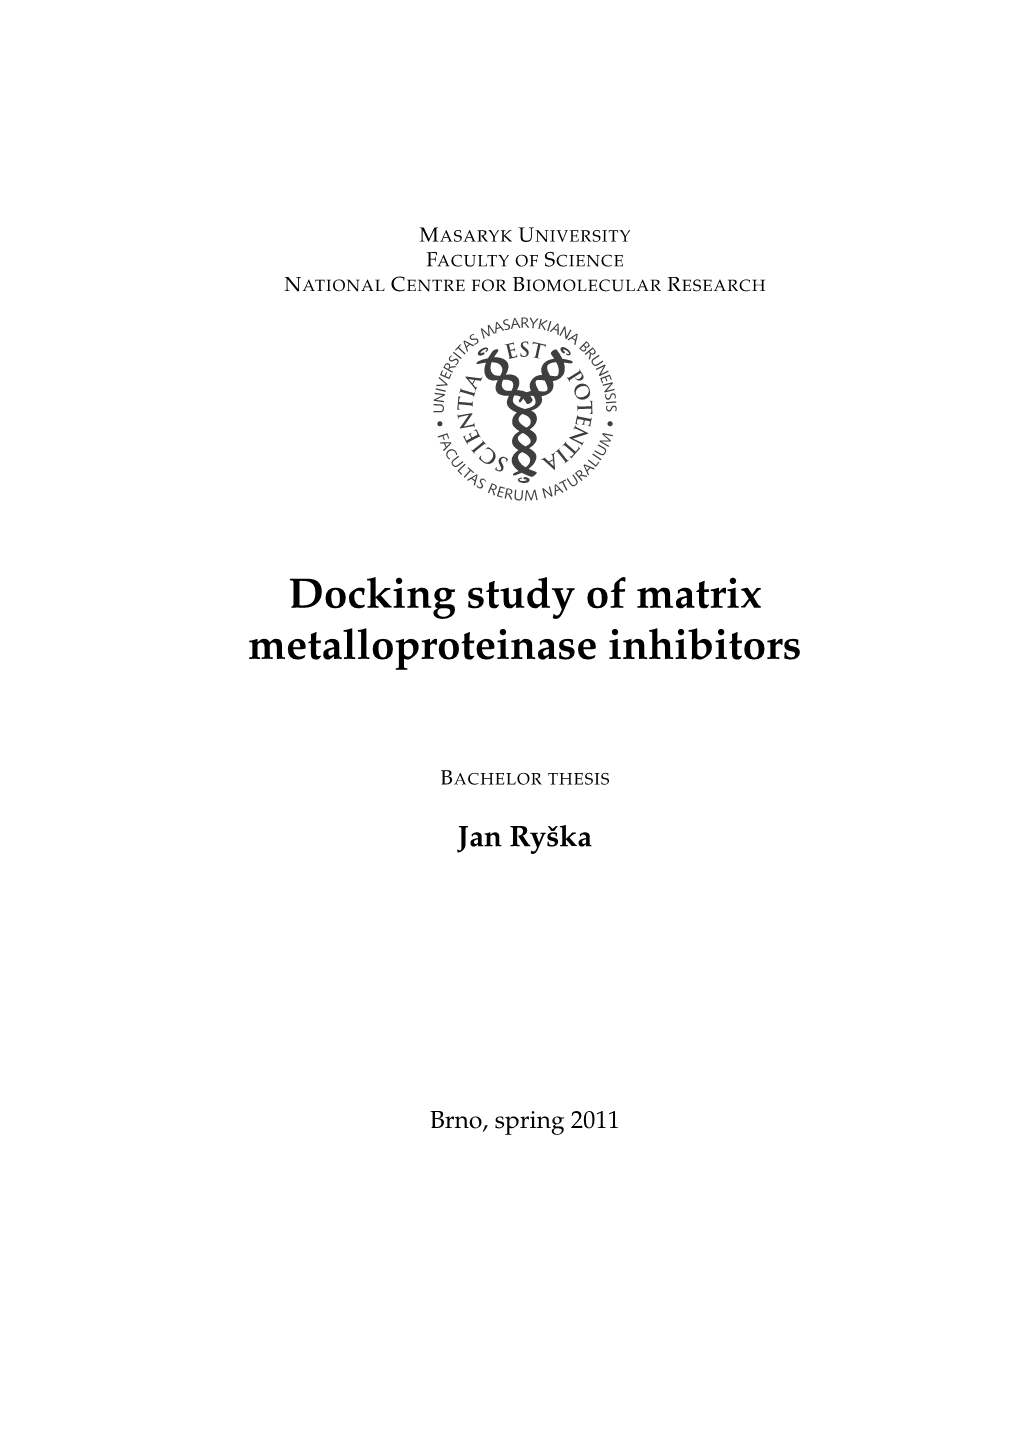 Docking Study of Matrix Metalloproteinase Inhibitors